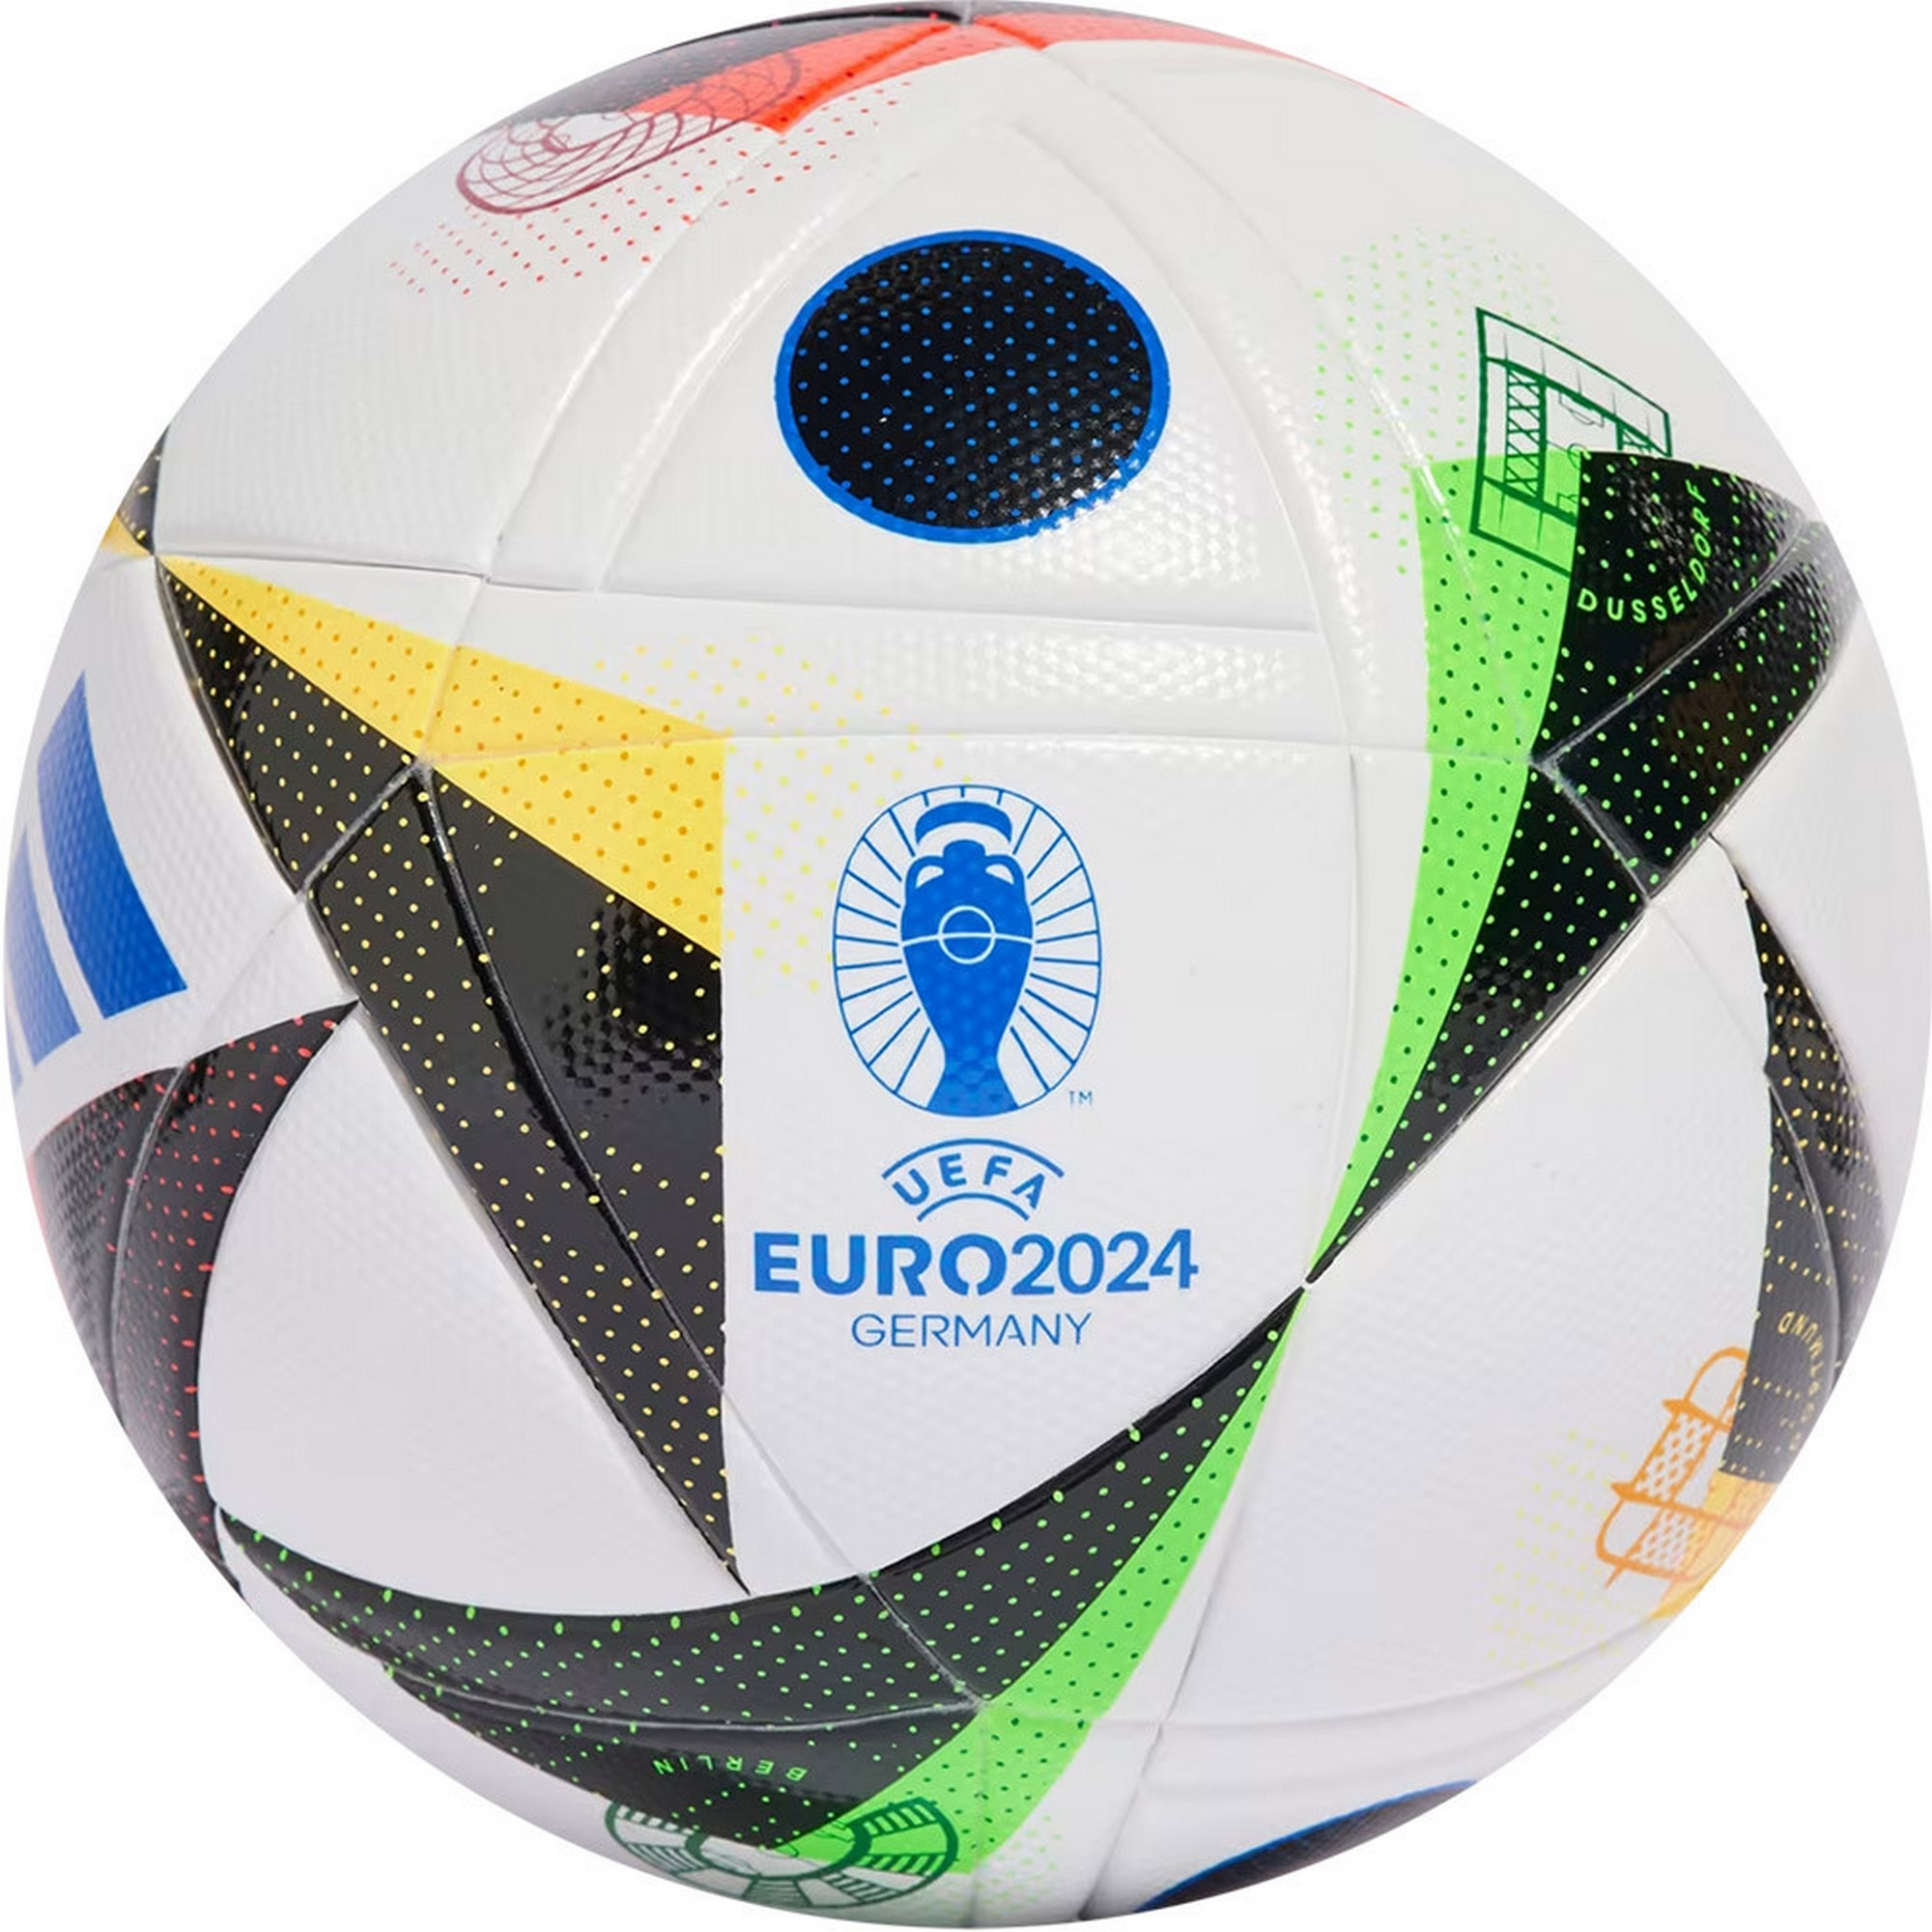   Adidas Euro24 Fussballliebe LGE Box IN9369 FIFA Quality, .5